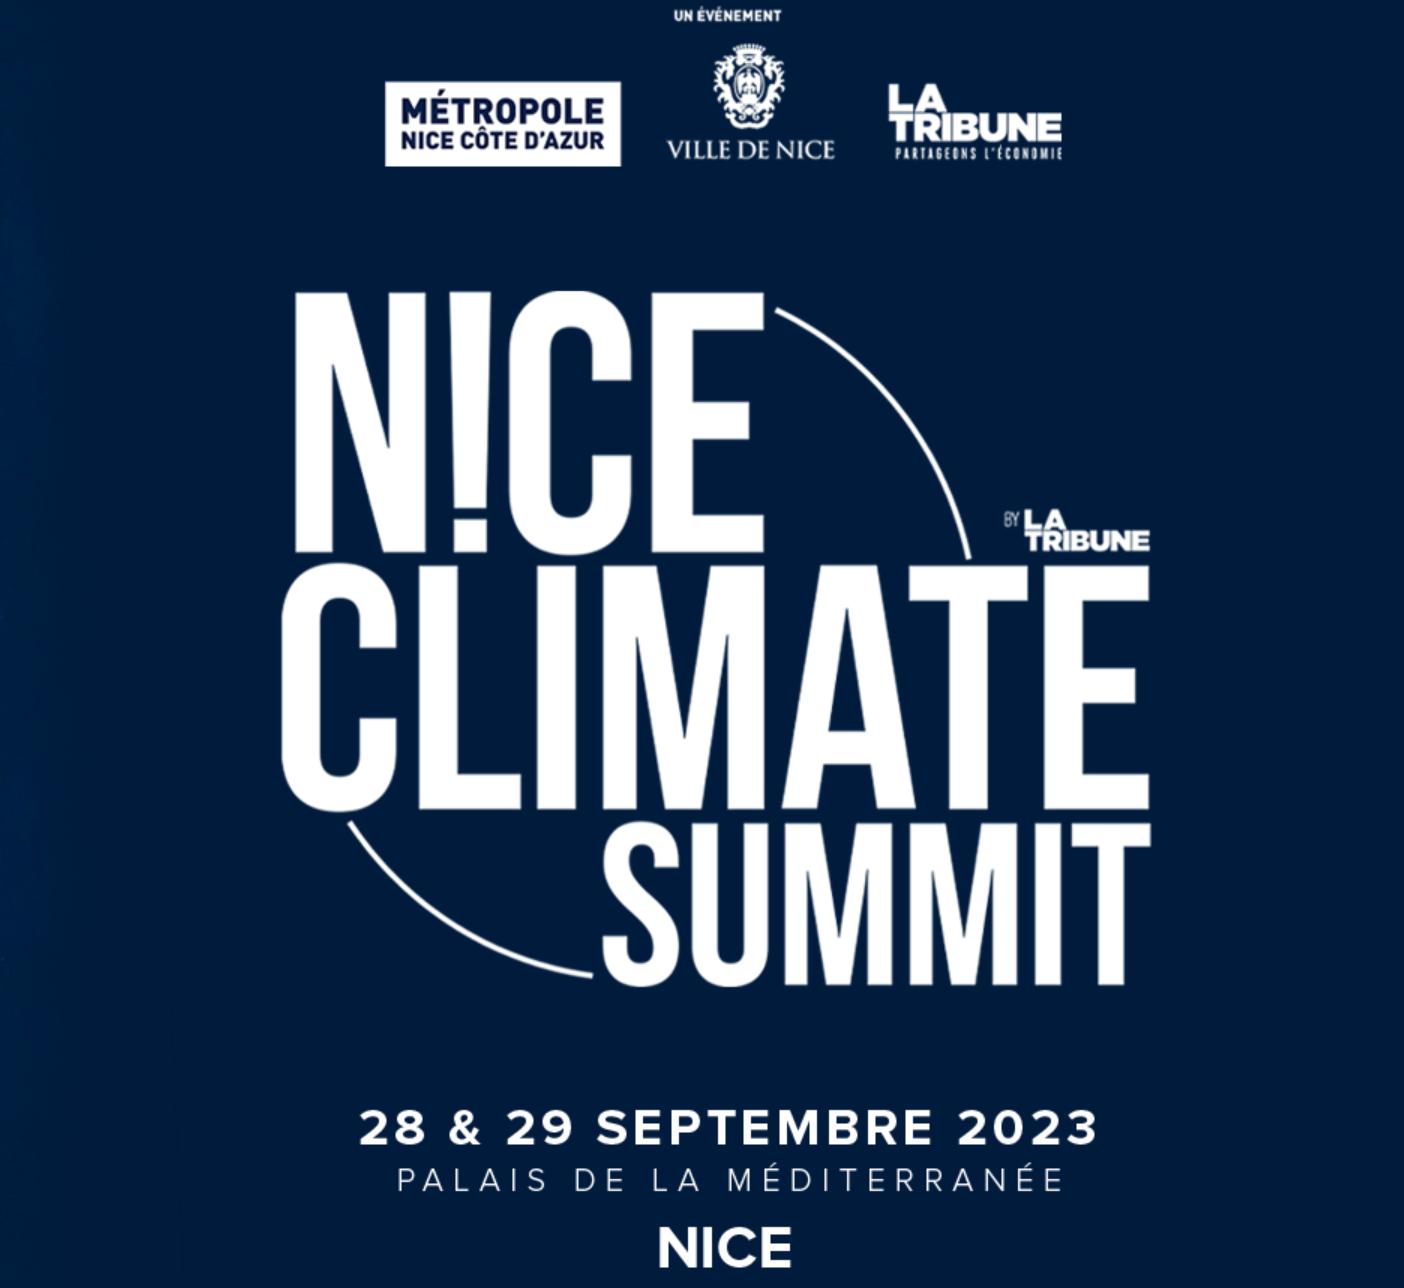 Nice Climate Summit